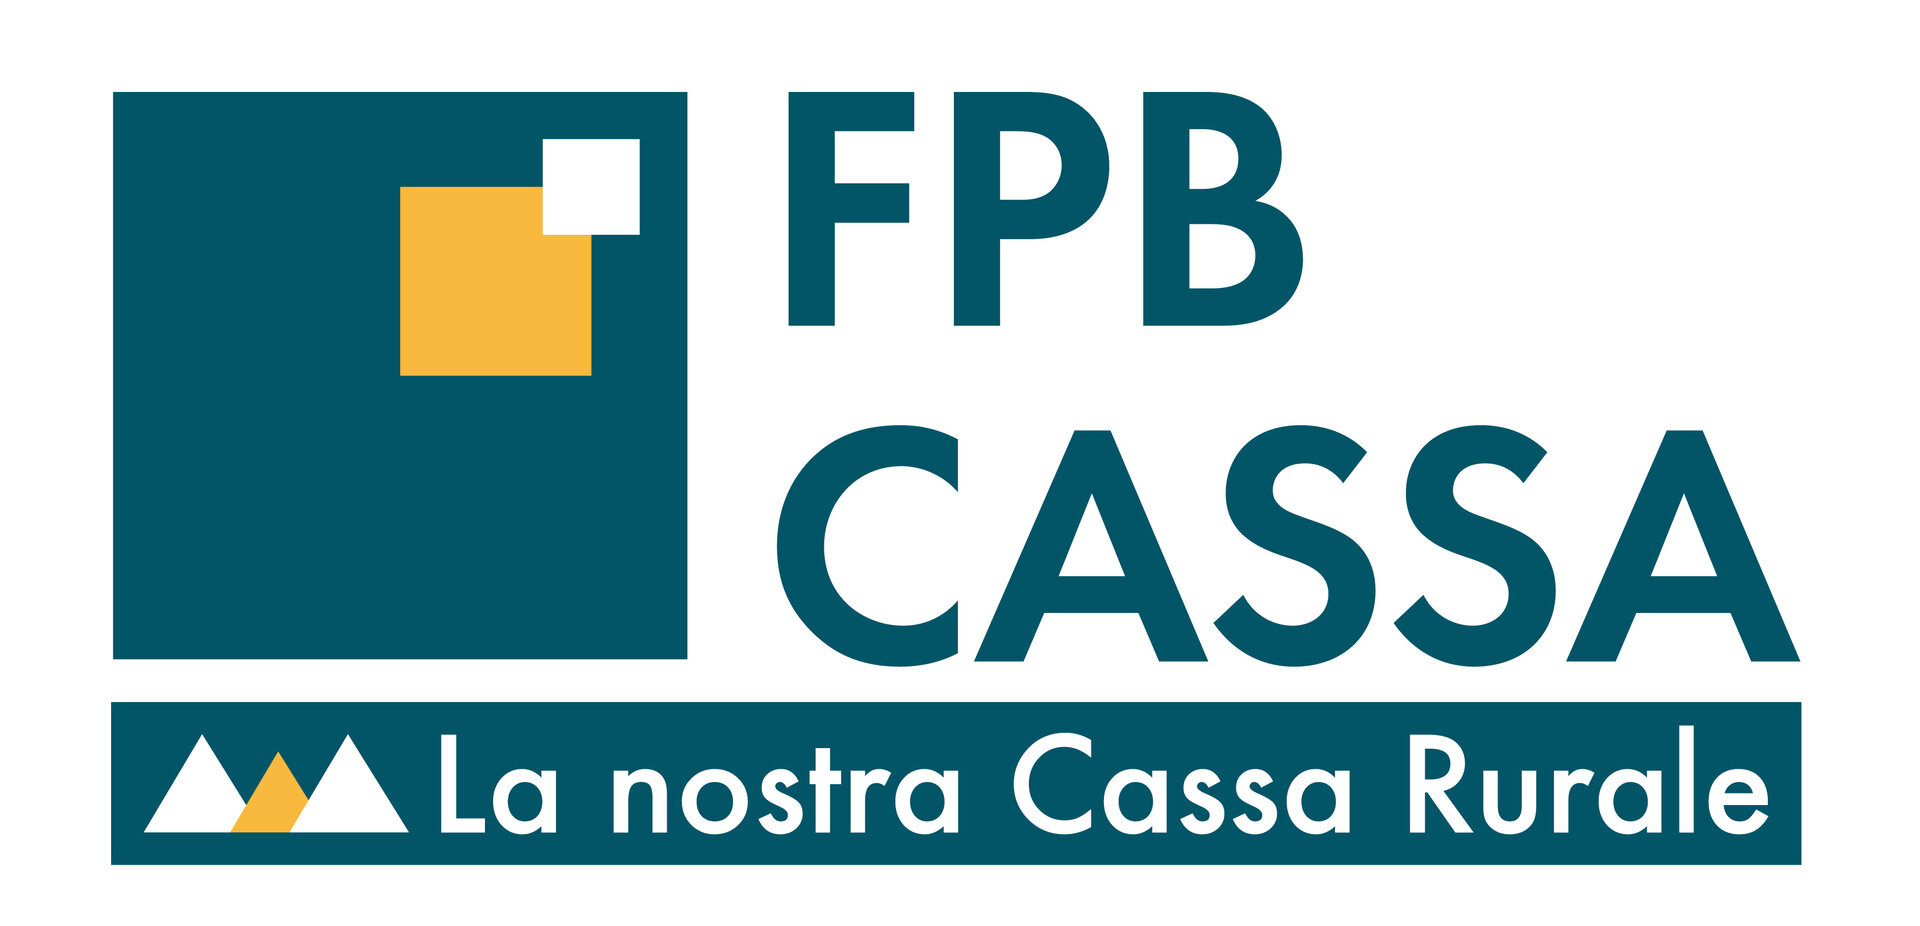 FPB Cassa Di Fassa Primiero Belluno   Branch Office Of Campitello Di Fassa